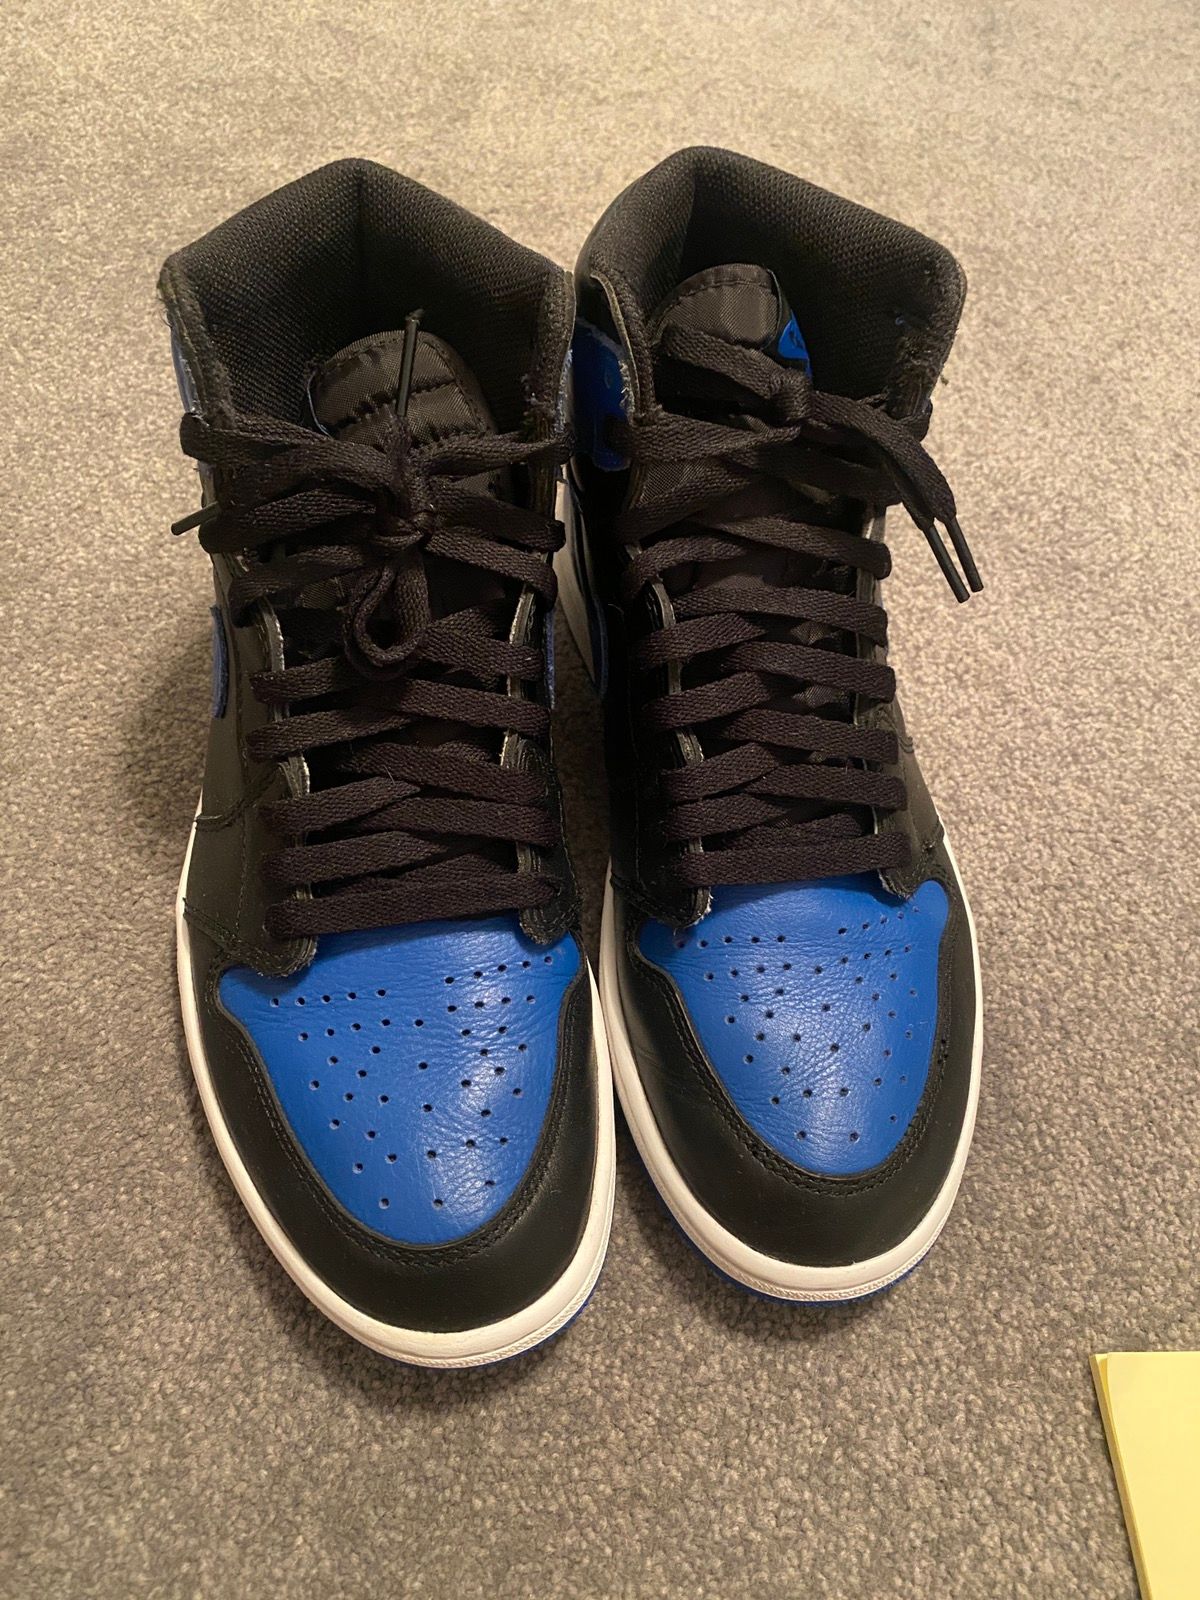 Pre-owned Jordan Nike Jordan 1 Royal Blue Size 9 Shoes